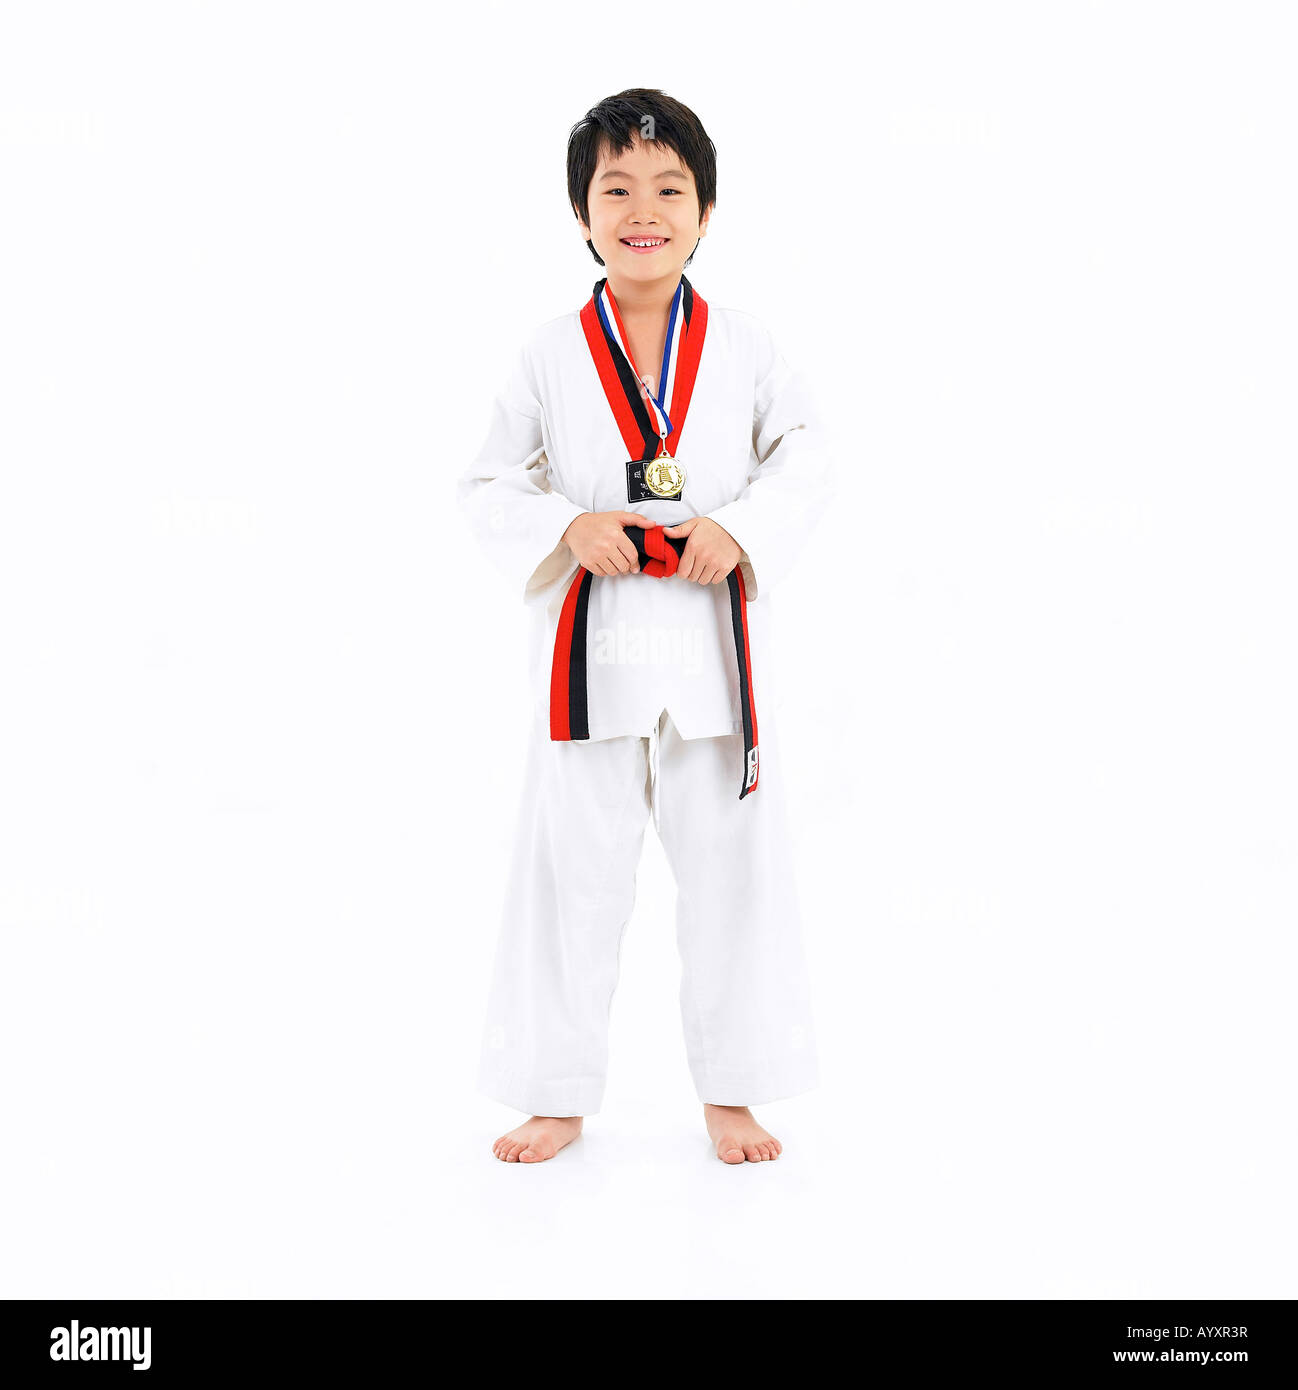 boy with medal on wearing taekwondo uniform Stock Photo